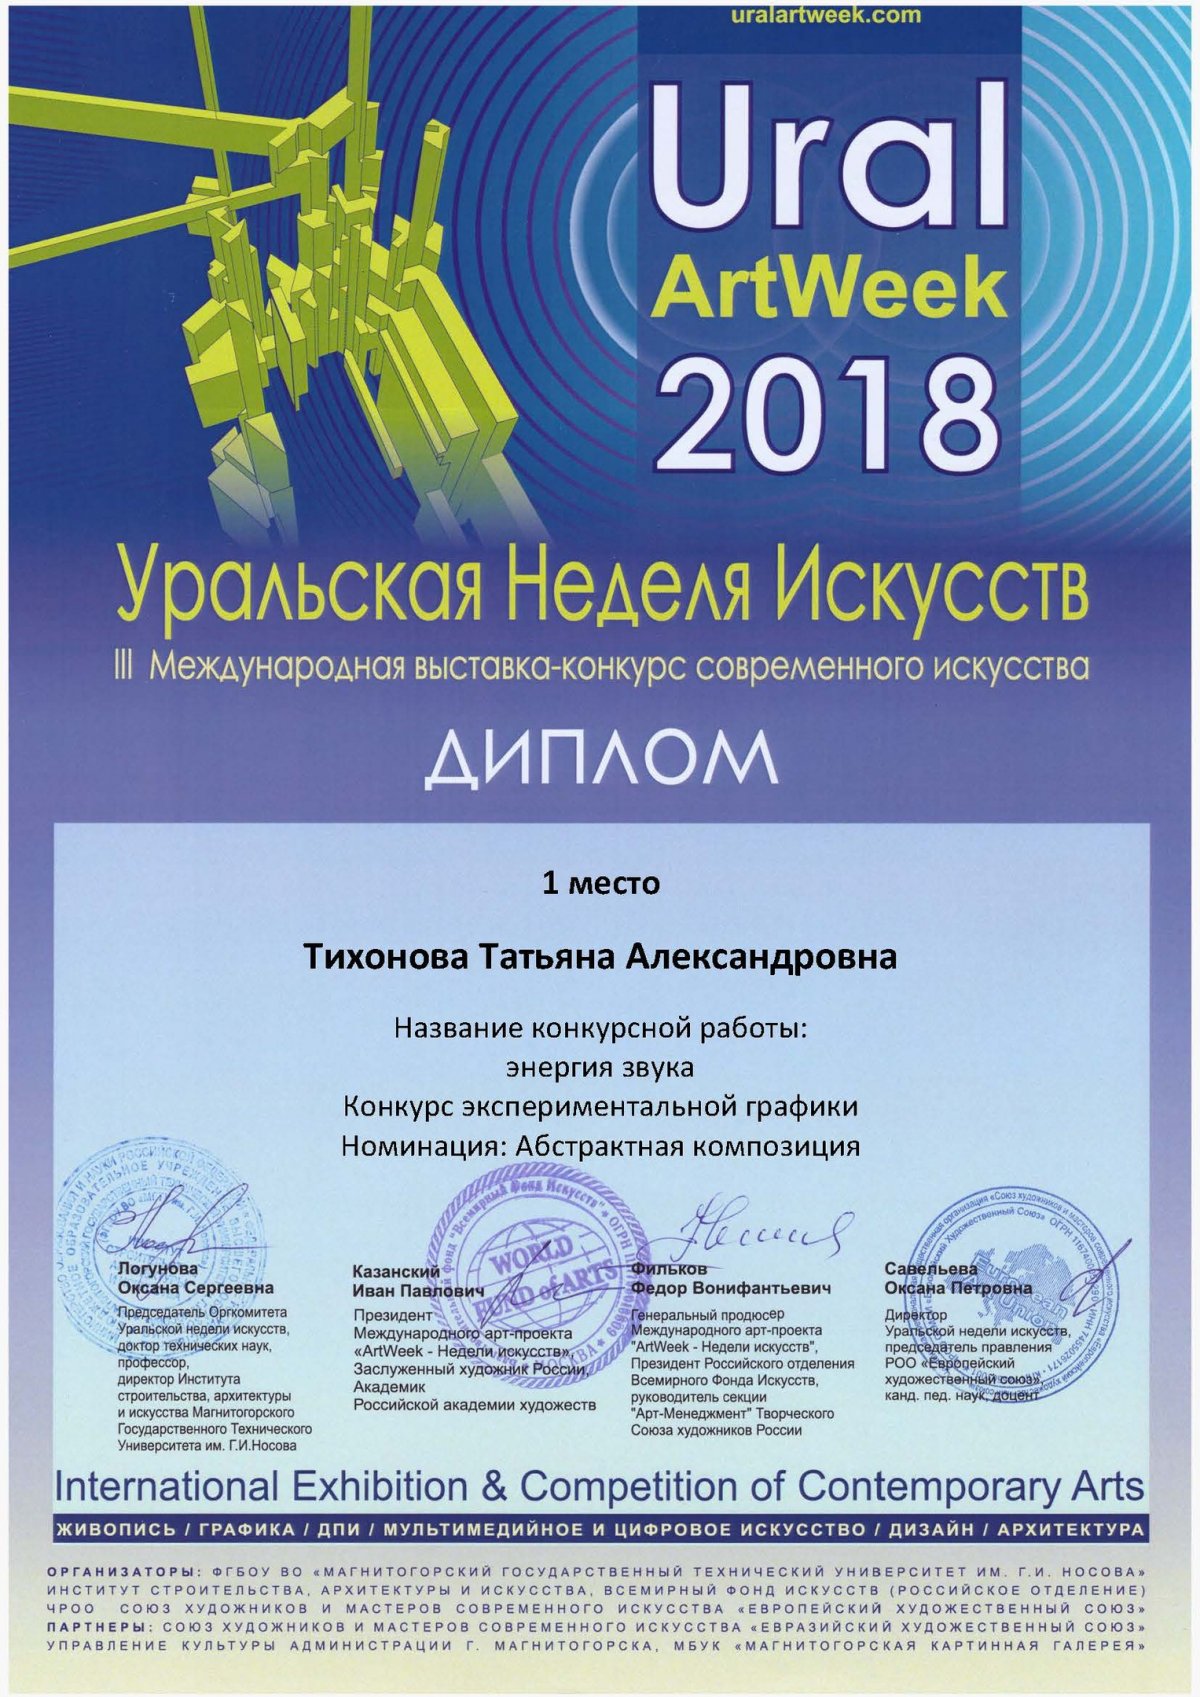 Поздравляем студентку 2 курса кафедры "Дизайн графический" Тихонову Татьяну с победой в III Международном конкурсе современного искусства Ural Art Week 2018.